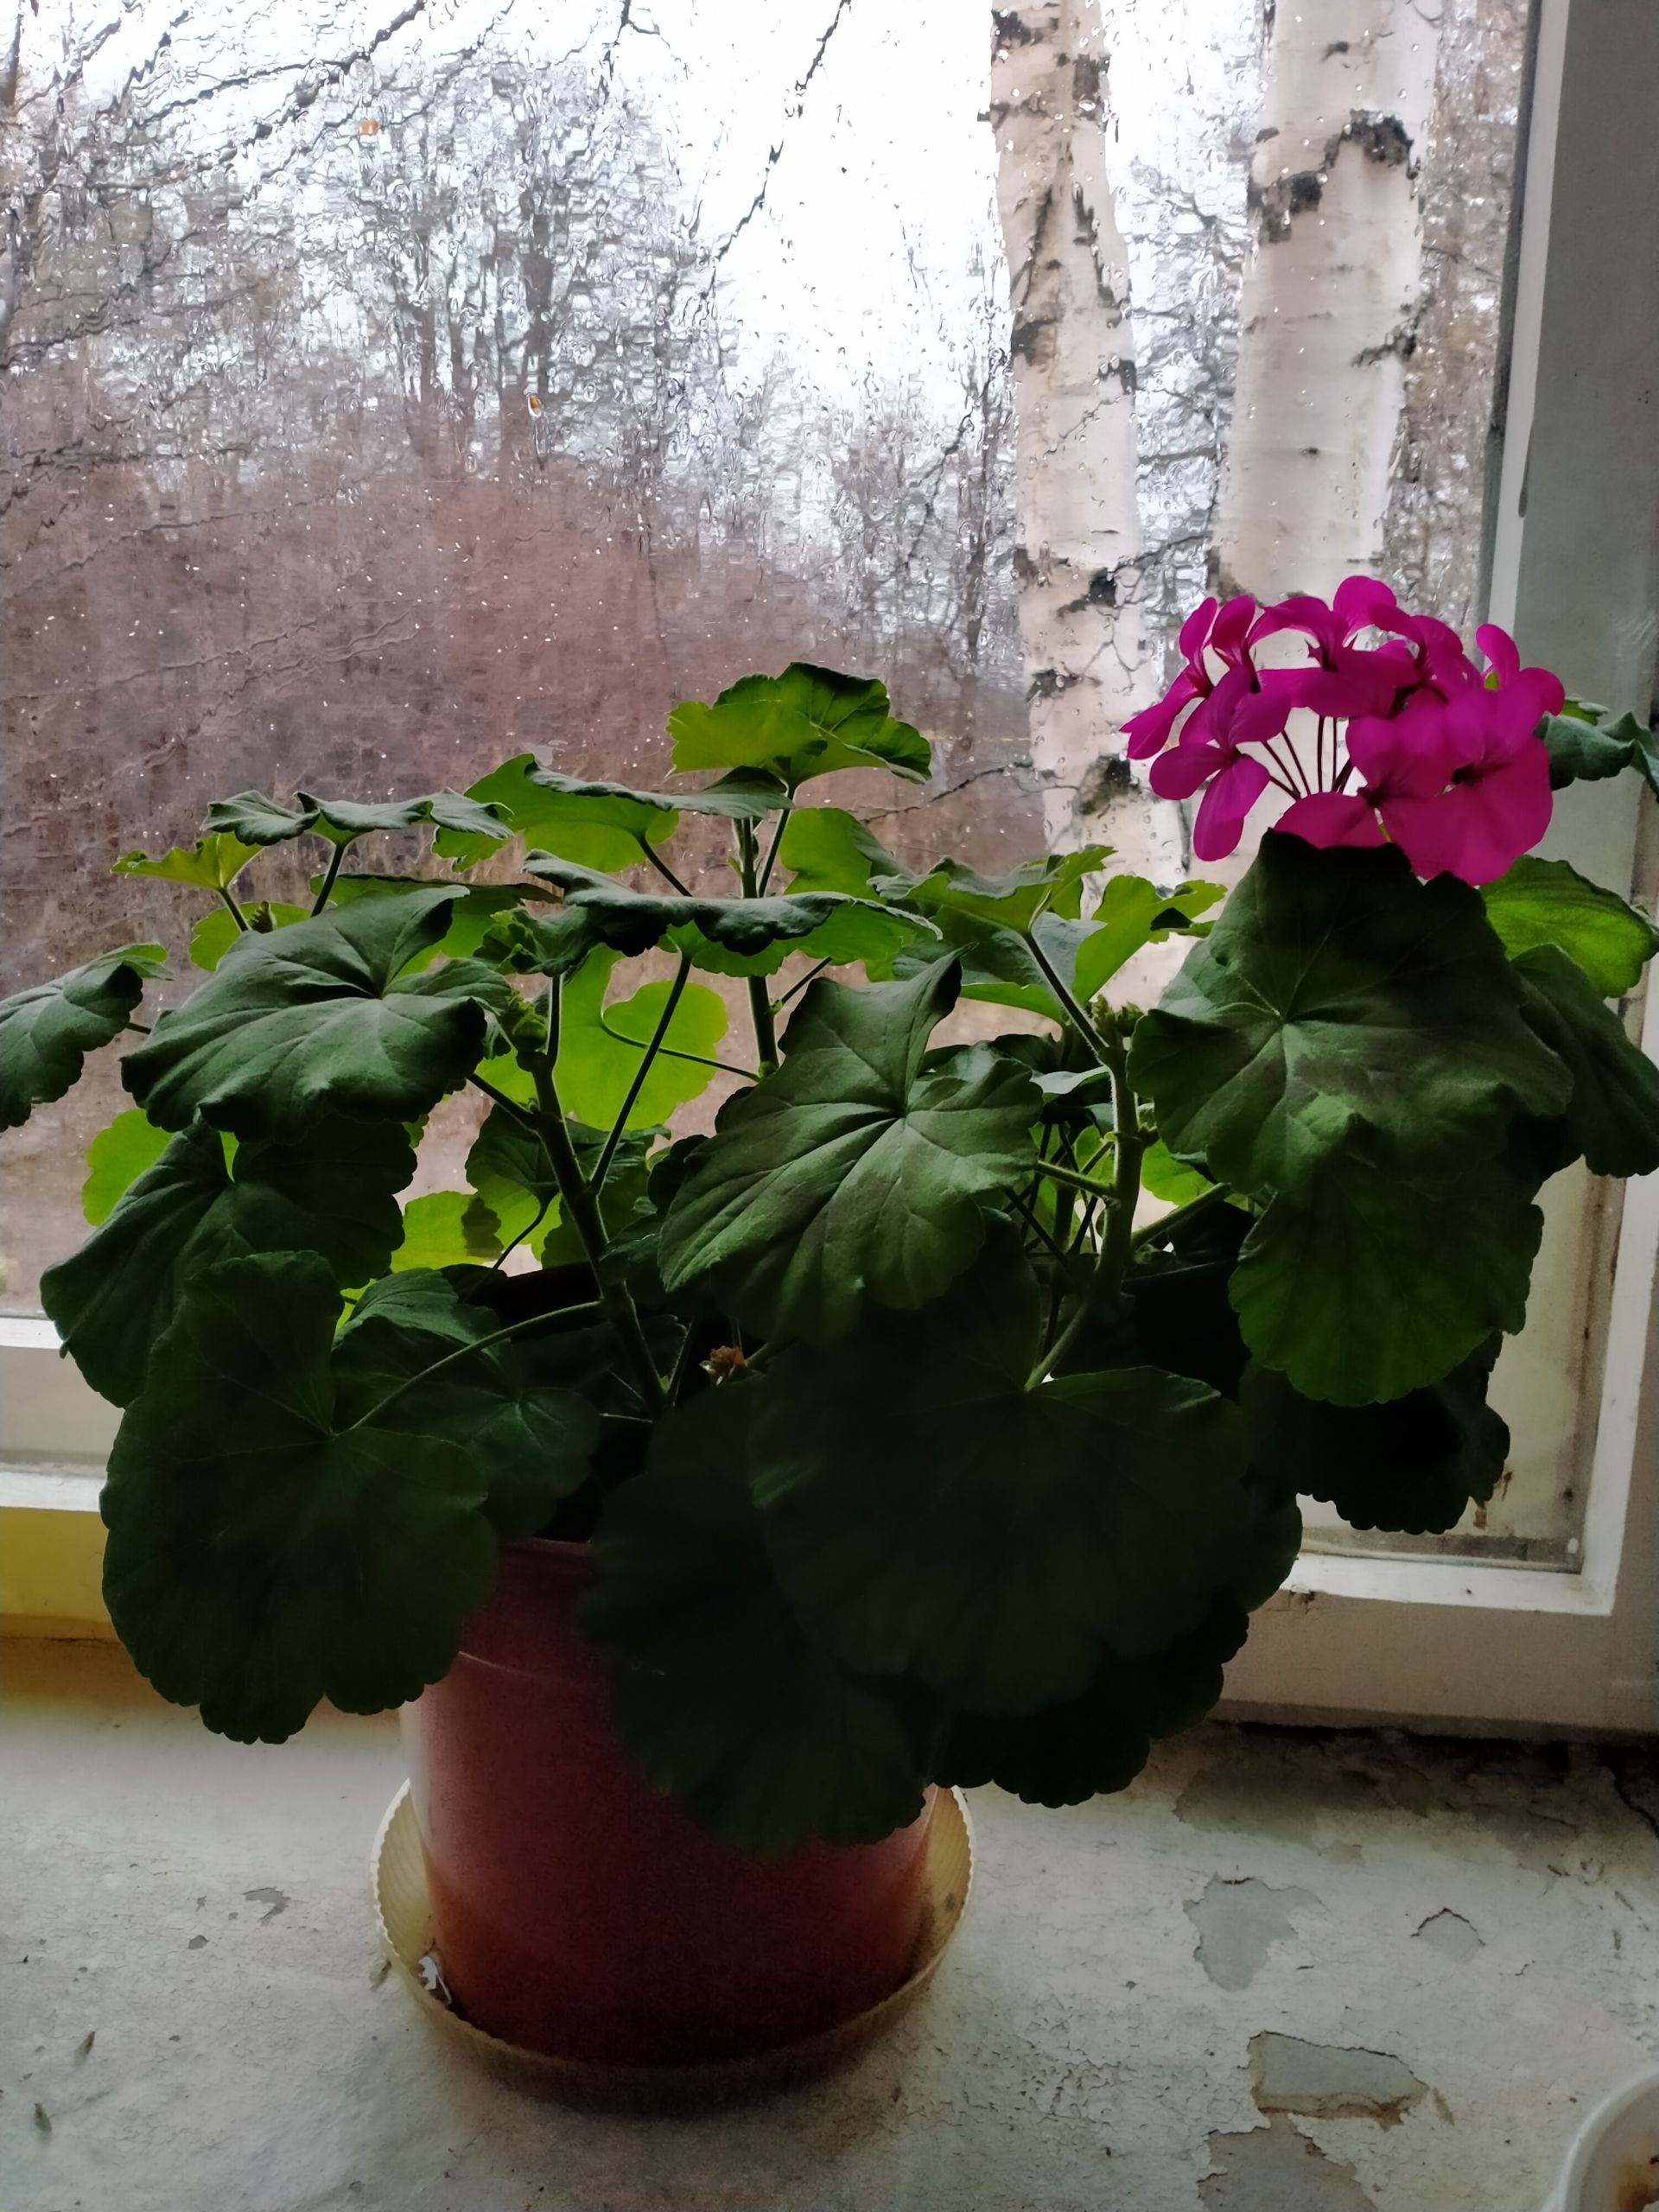 Айгуль Нуриева из Янги Болгар любит заниматься выращиванием цветов